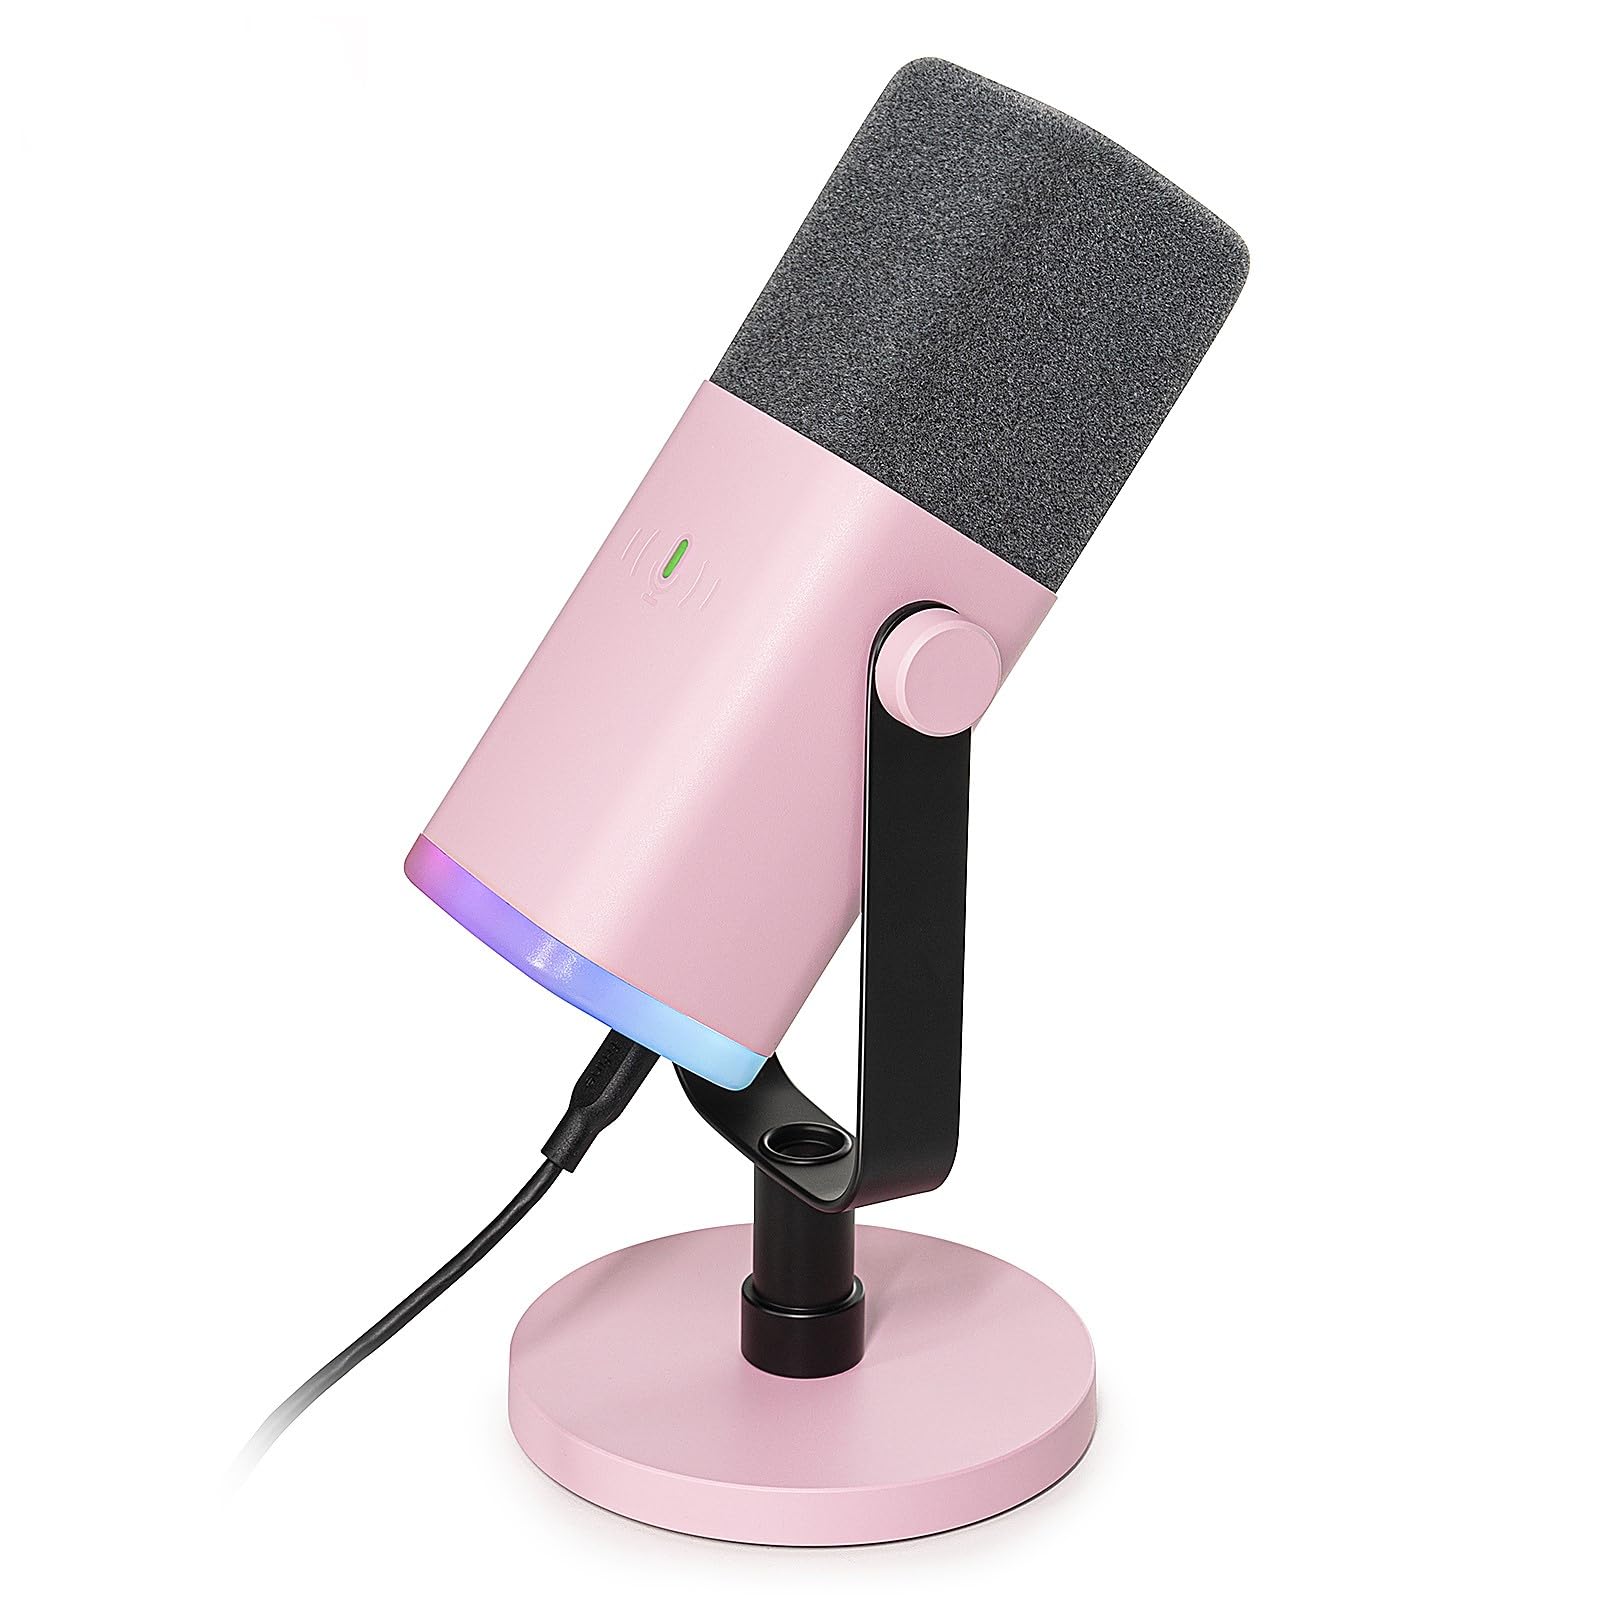 Exclusif FIFINE Microphone USB XLR pour studio de strea